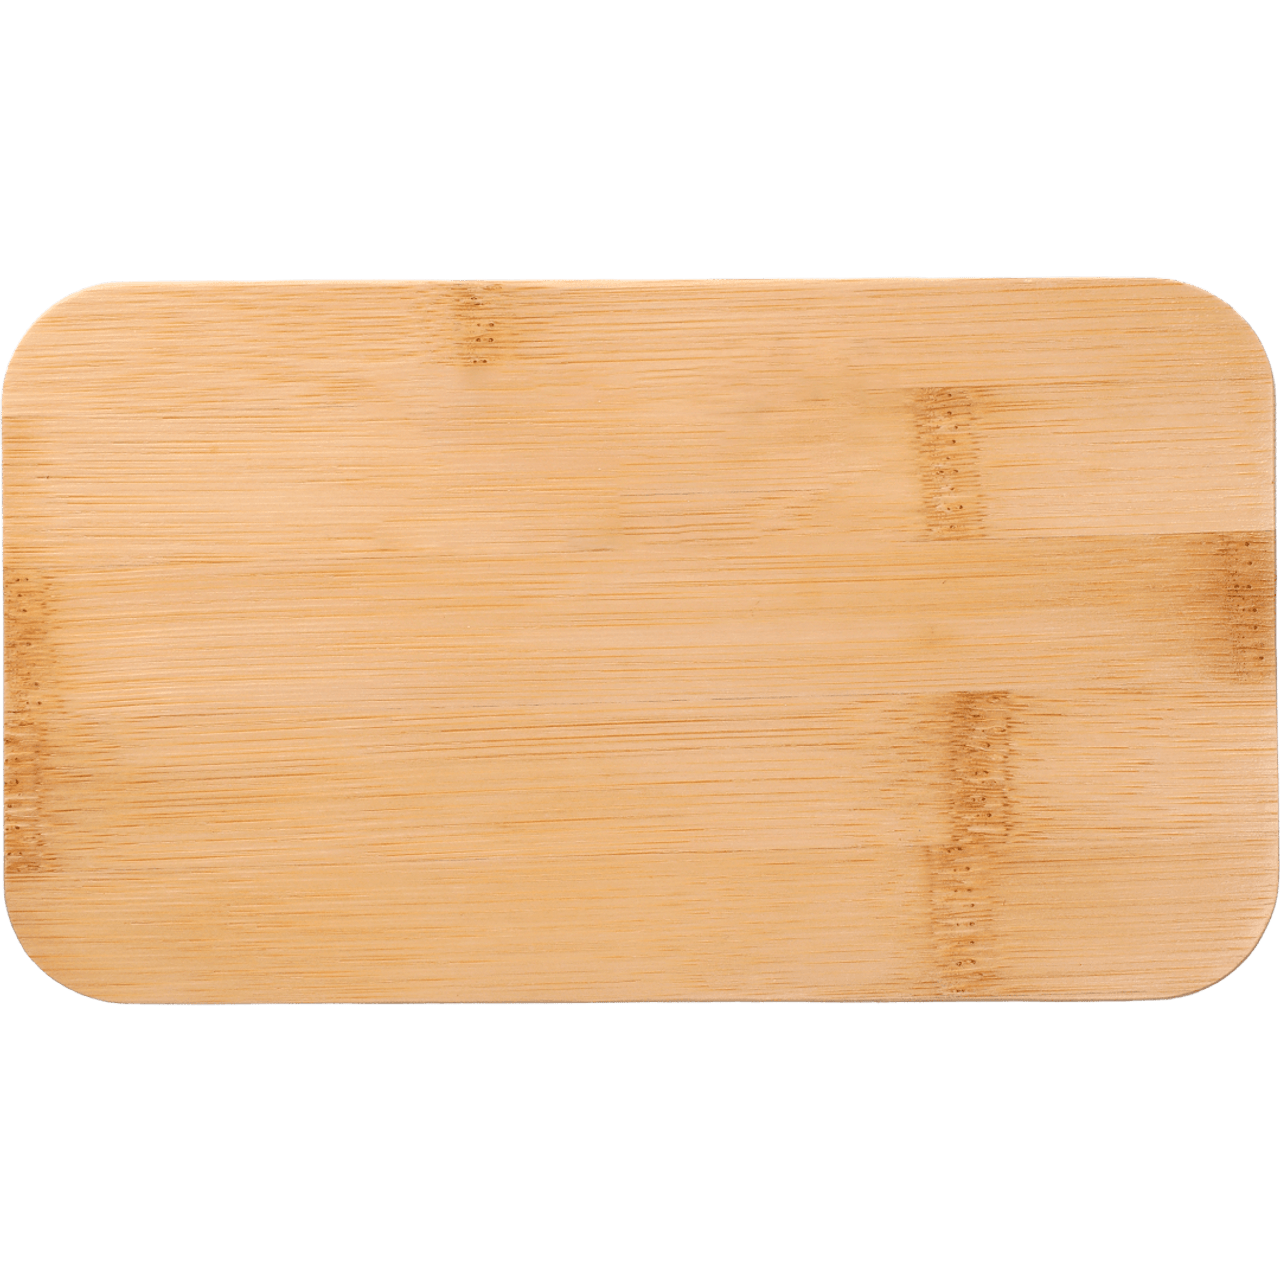 Stackable Bamboo Fiber Bento Box